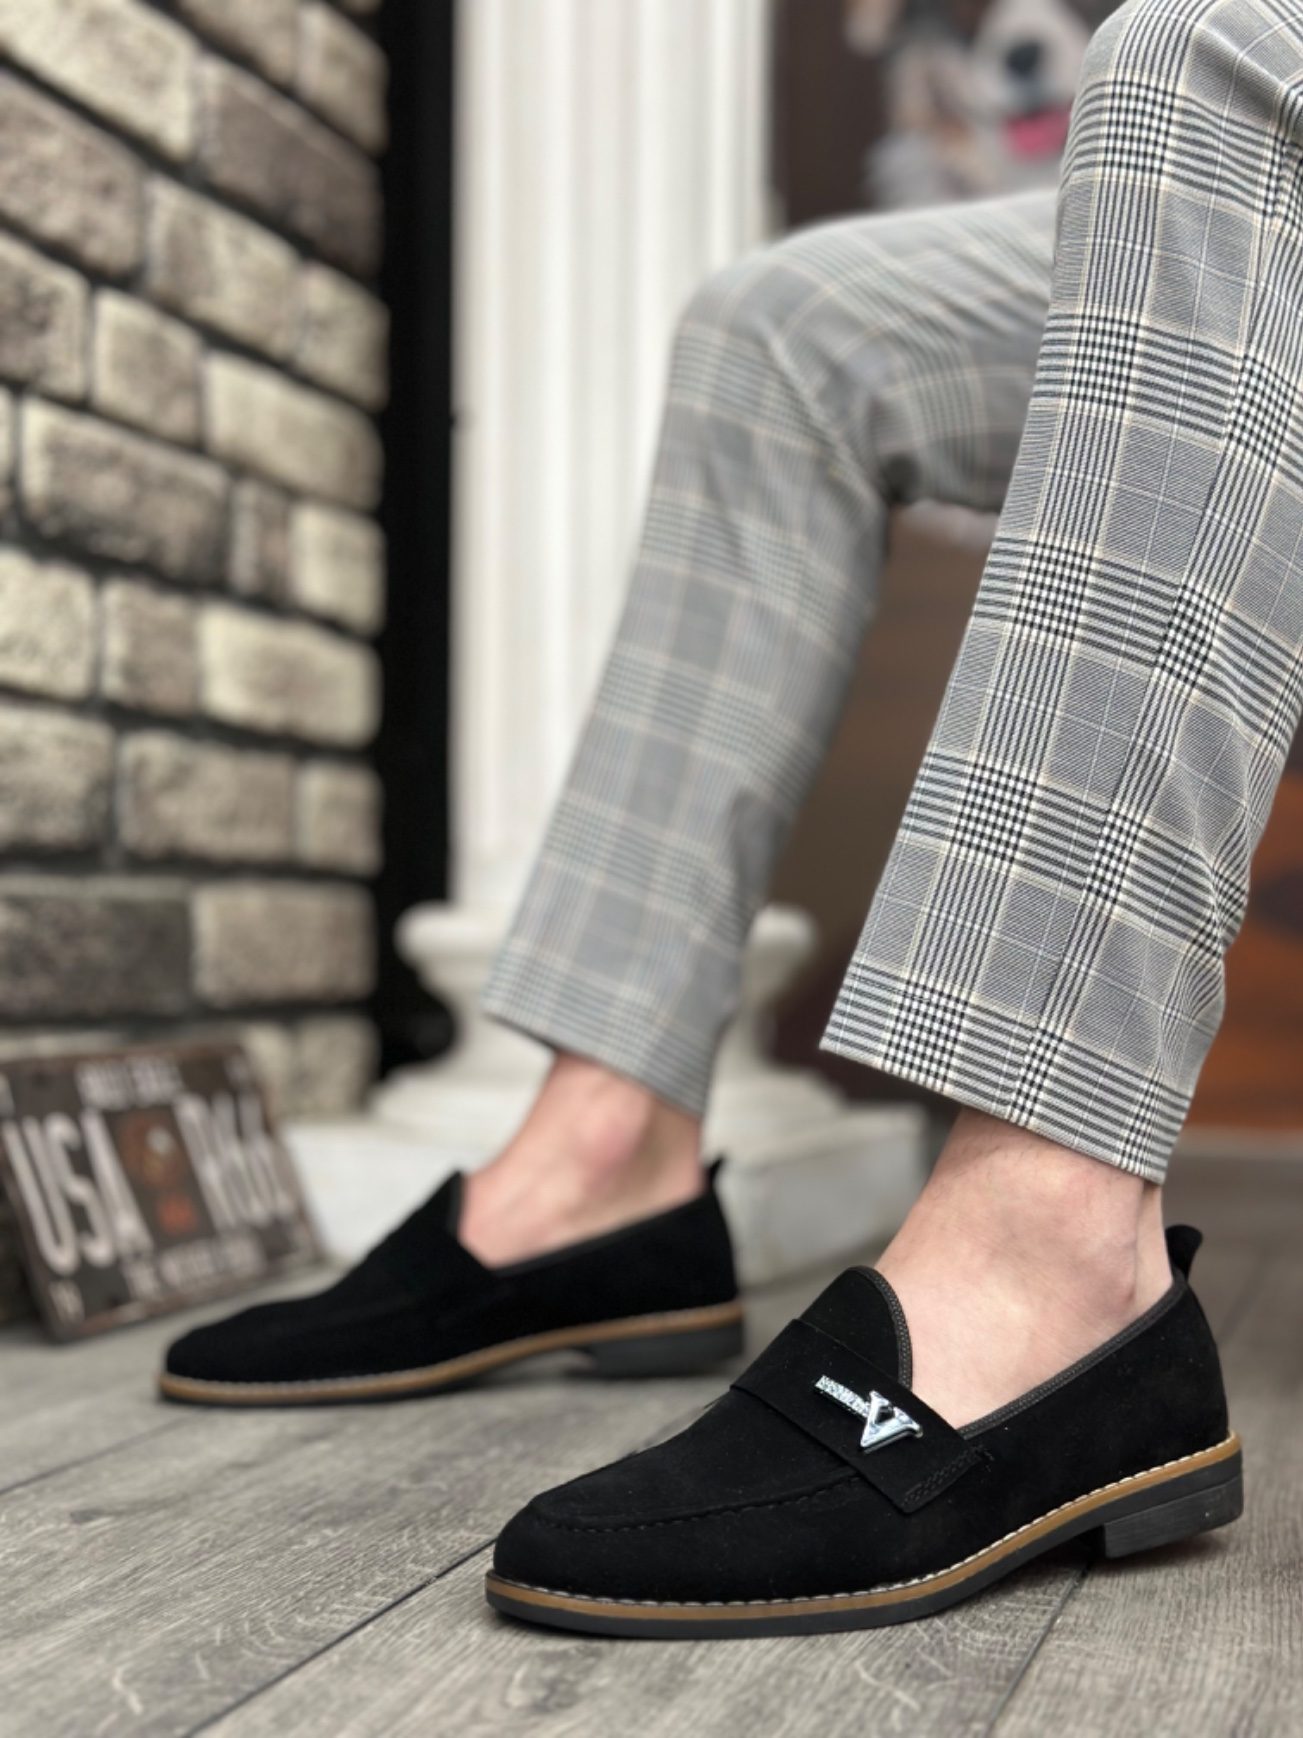 CLZ946 Süet Püsküllü Corcik Siyah V Fashıon Tokalı Klasik Erkek Ayakkabısı